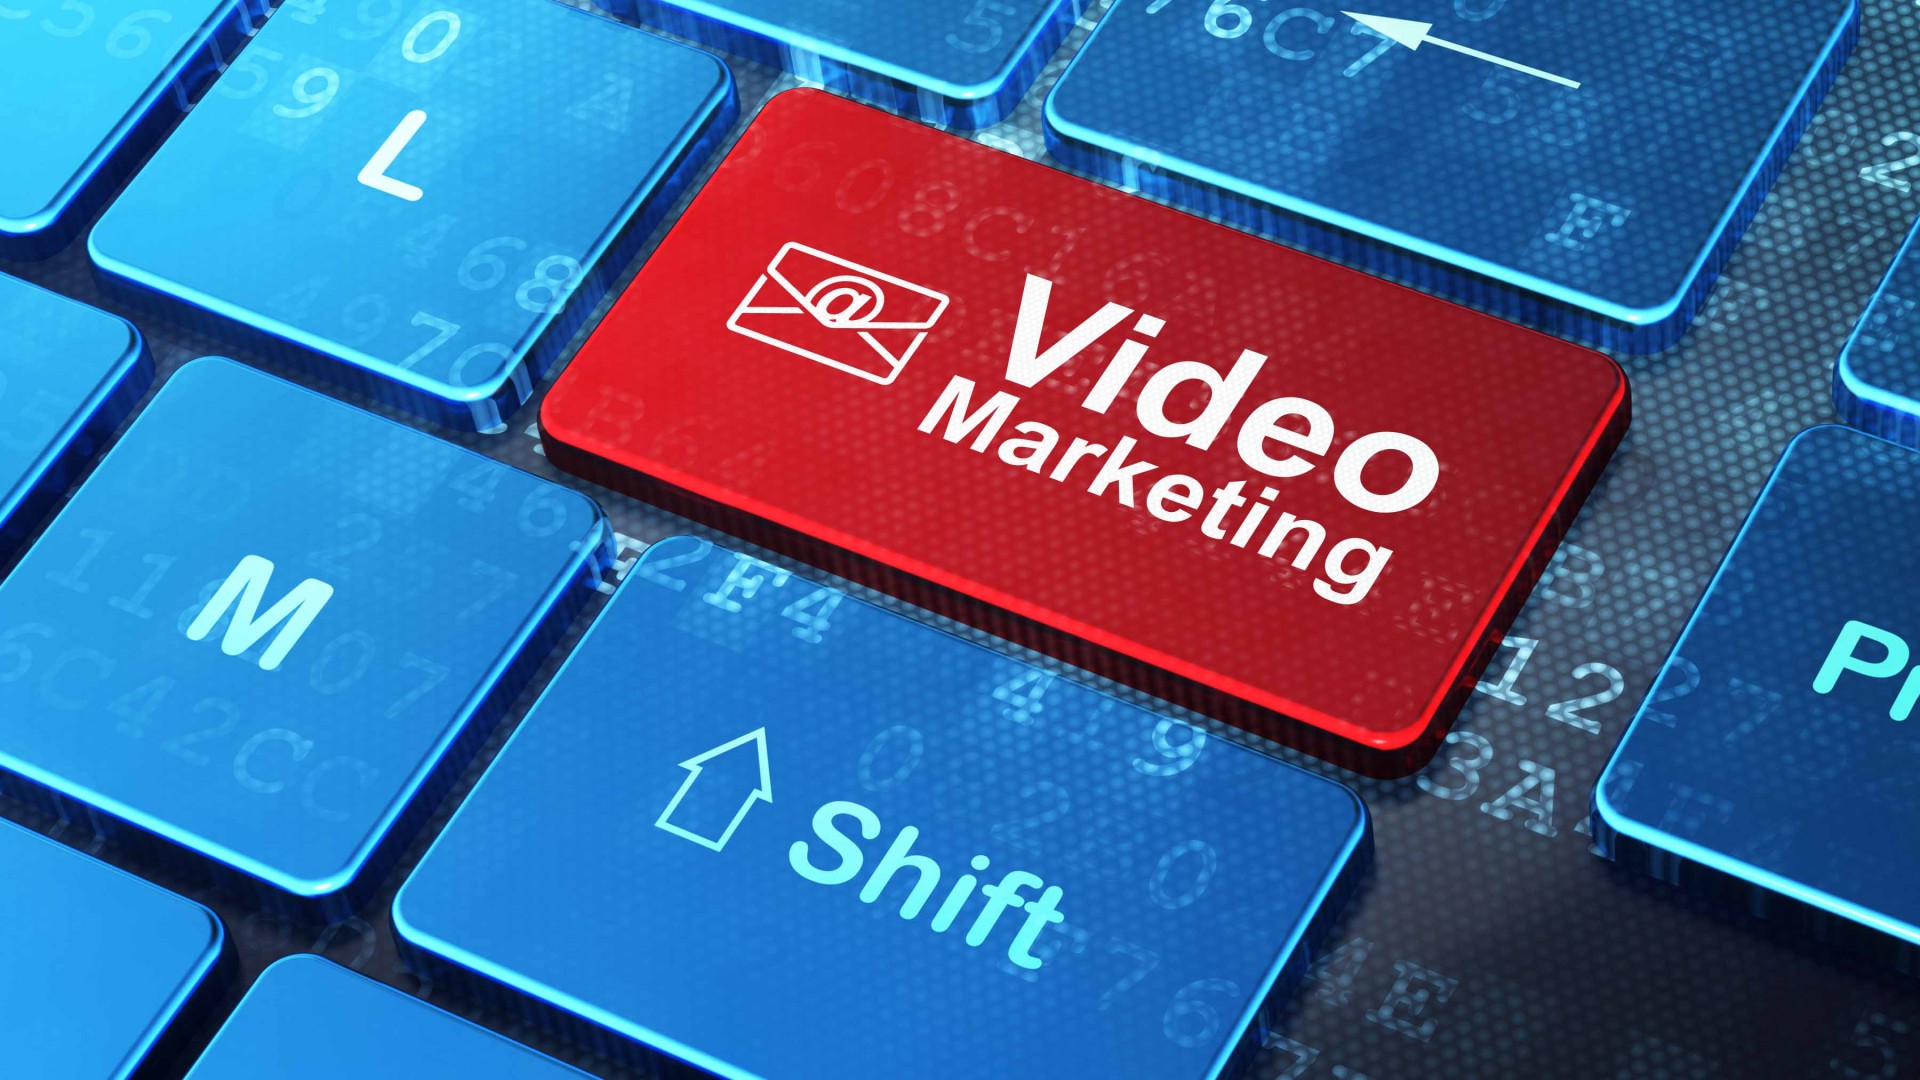 Tham gia khóa học Video Marketing để cập nhật và bắt kịp xu hướng số